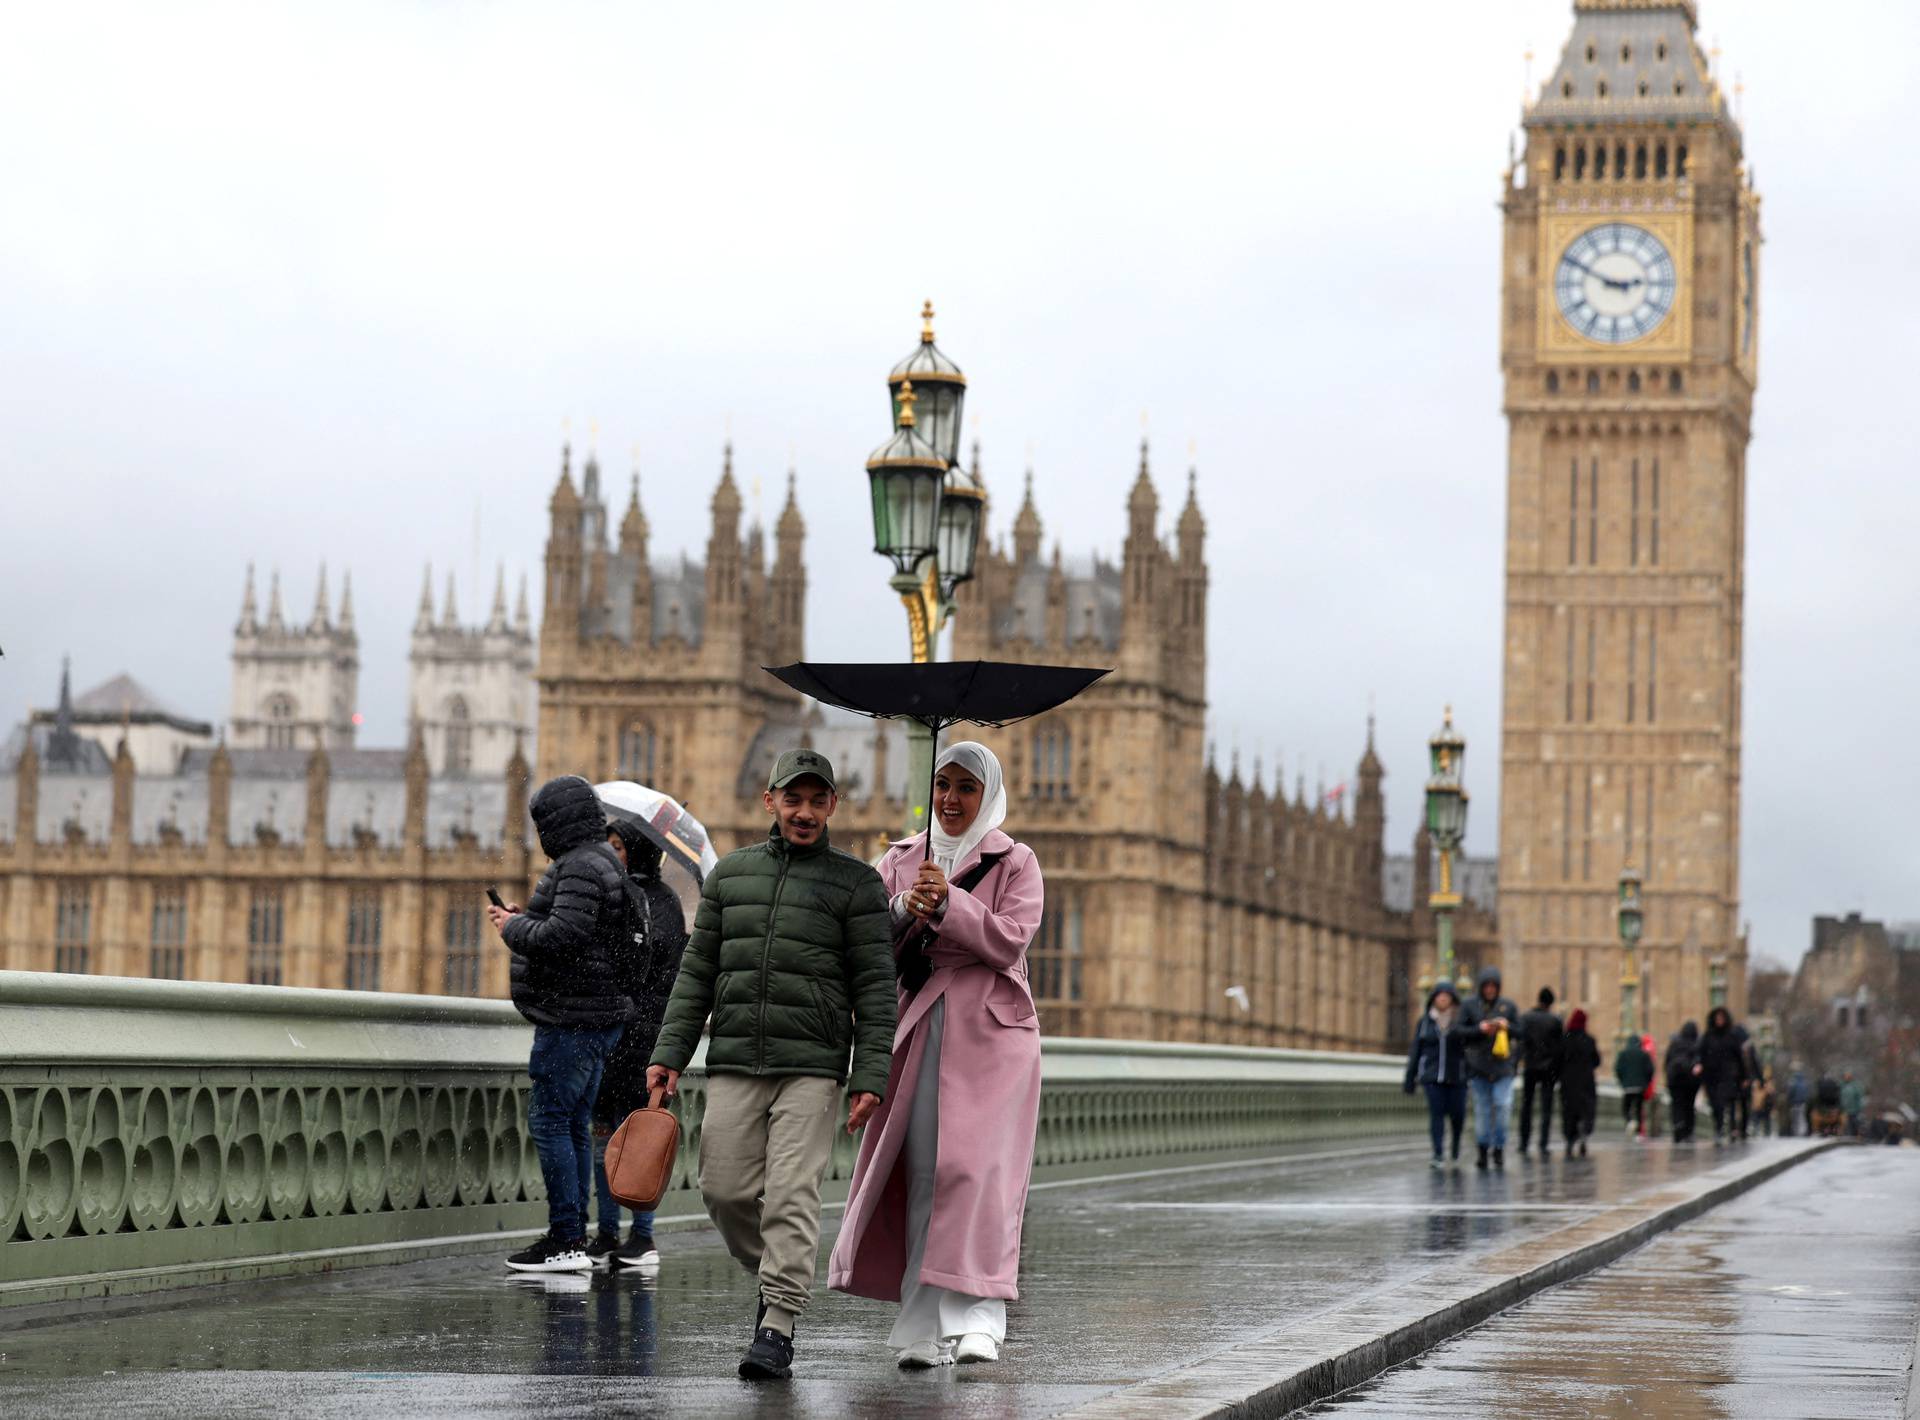 Pedestrians carrying an umbrella cross Westminster Bridge